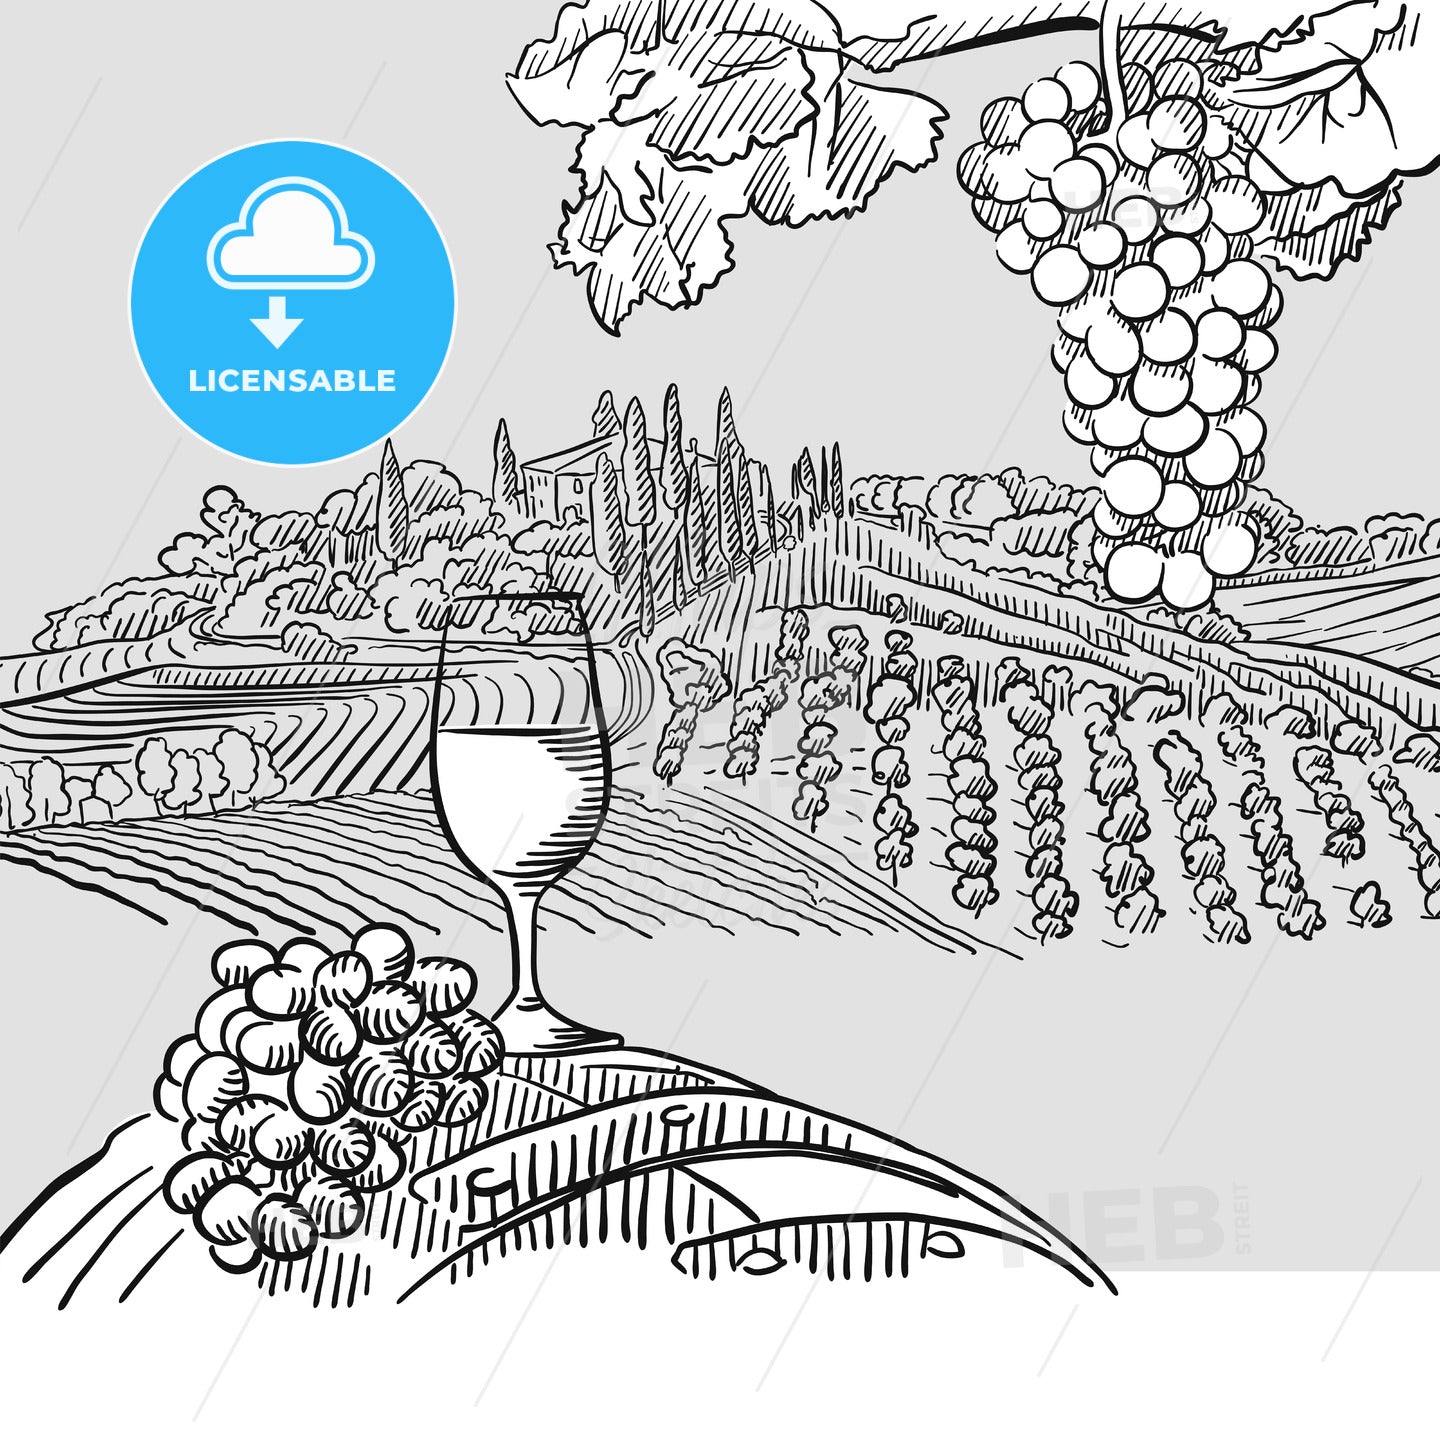 Wine barrel grapes and landscape Illustration – instant download